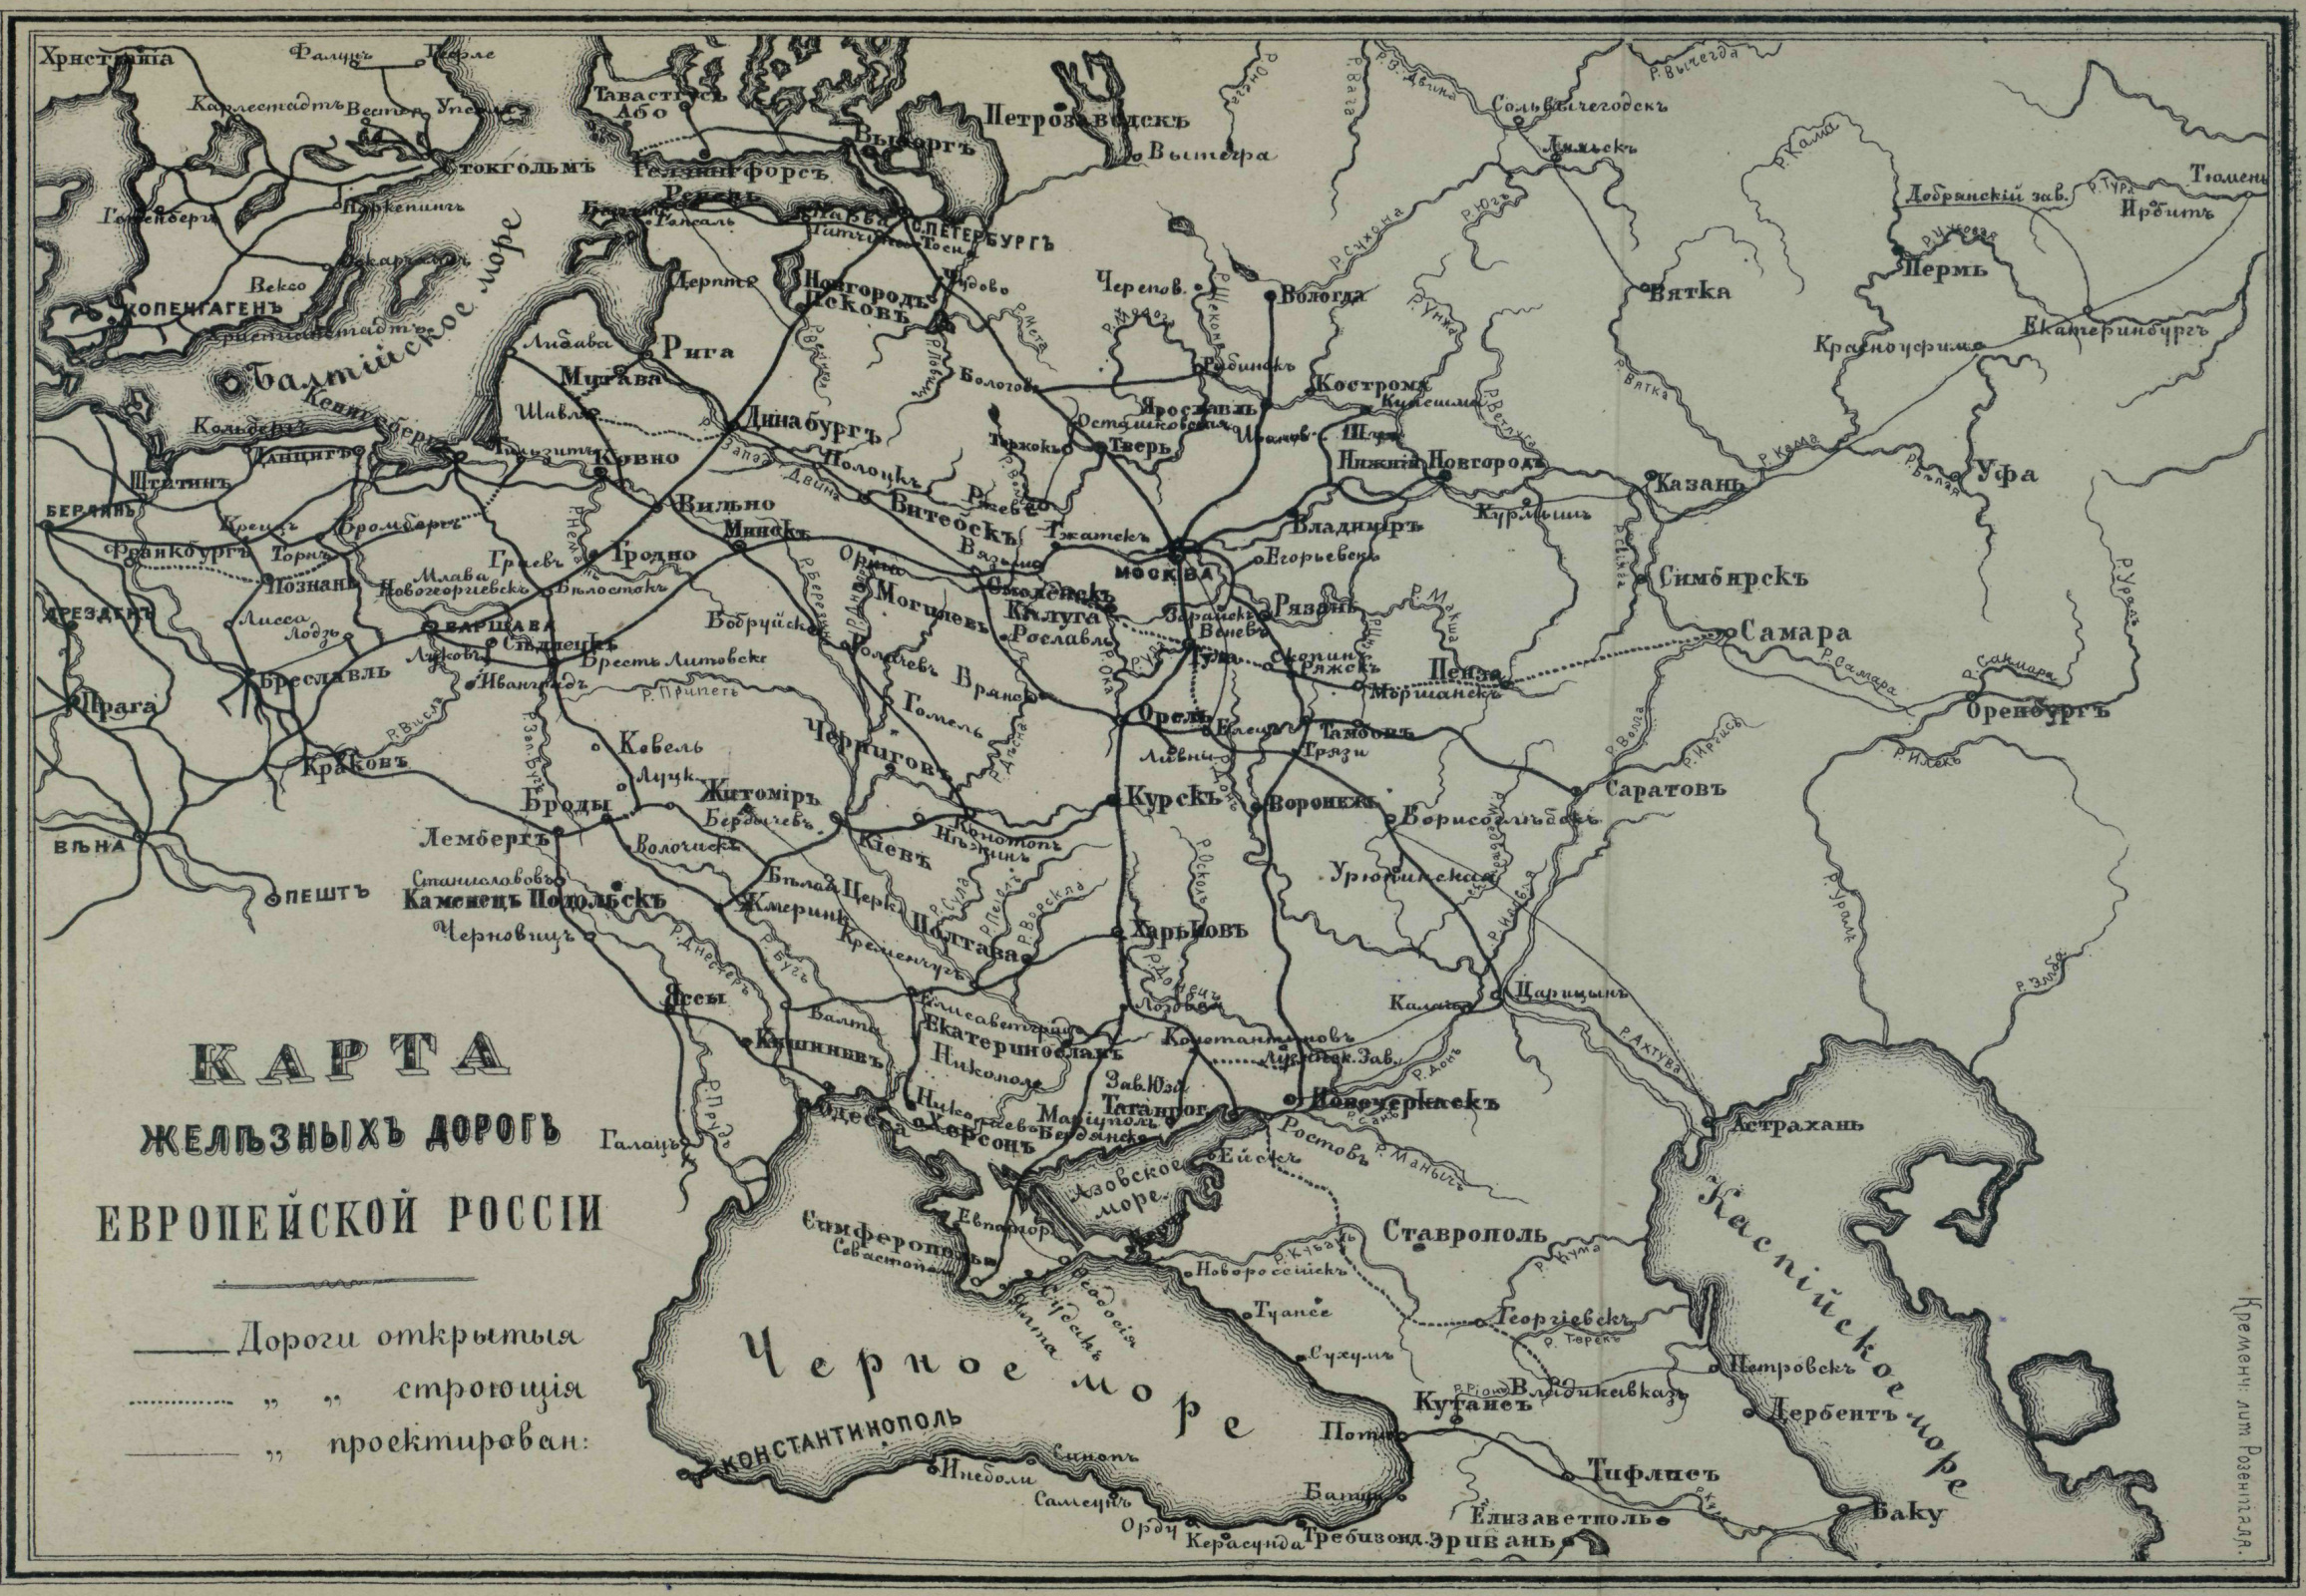 Грязе-Царицынская и Волго-Донская  железные дороги на карте железных дорог Российской империи 1893 года. Фото: wikipedia.org